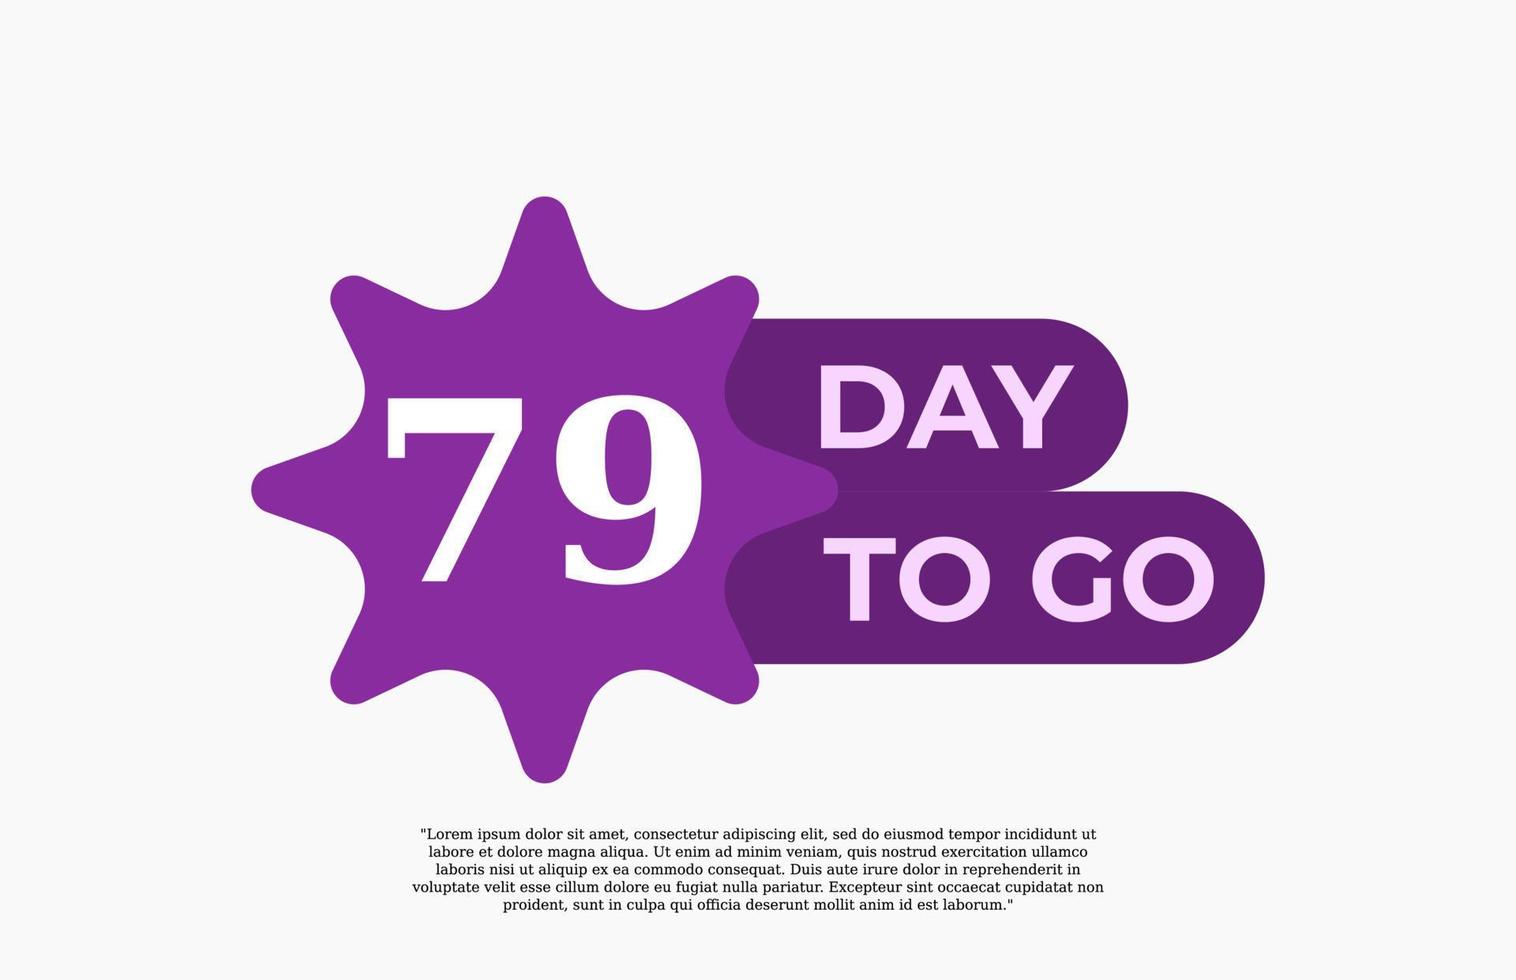 79 jours pour aller. offrir une illustration d'art vectoriel de signe d'affaires de vente avec une police fantastique et une belle couleur blanche violette